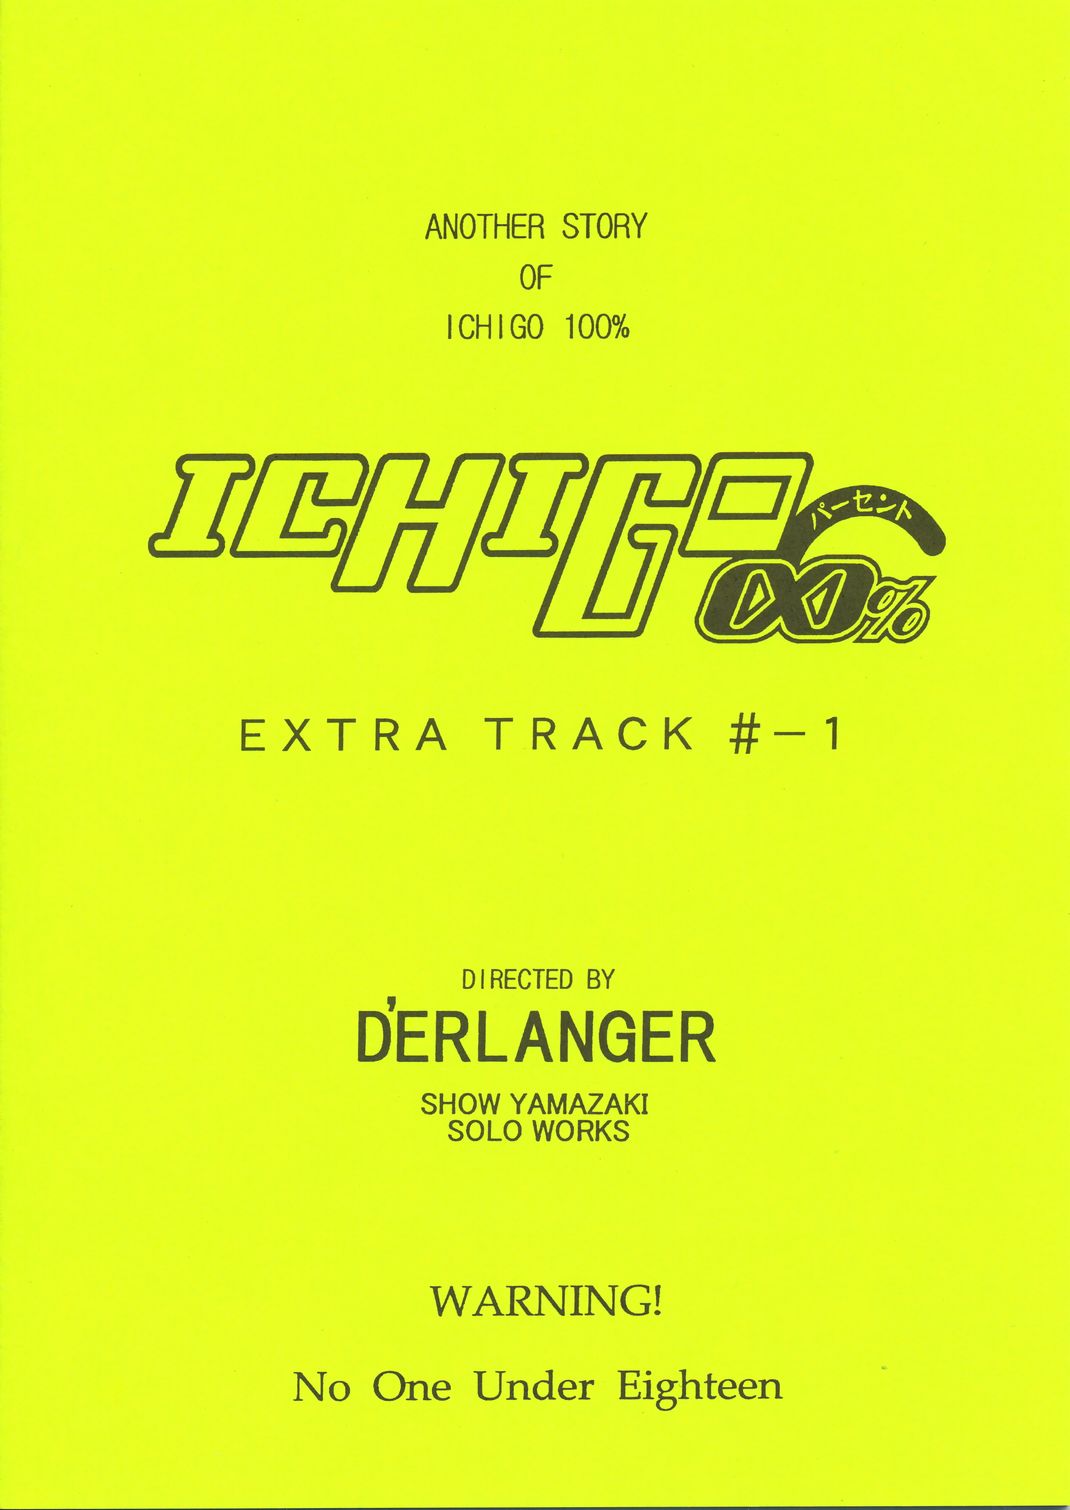 [D&#039;ERLANGER] ICHIGO&infin;% EXTRA TRACK -1 (Ichigo 100%) 